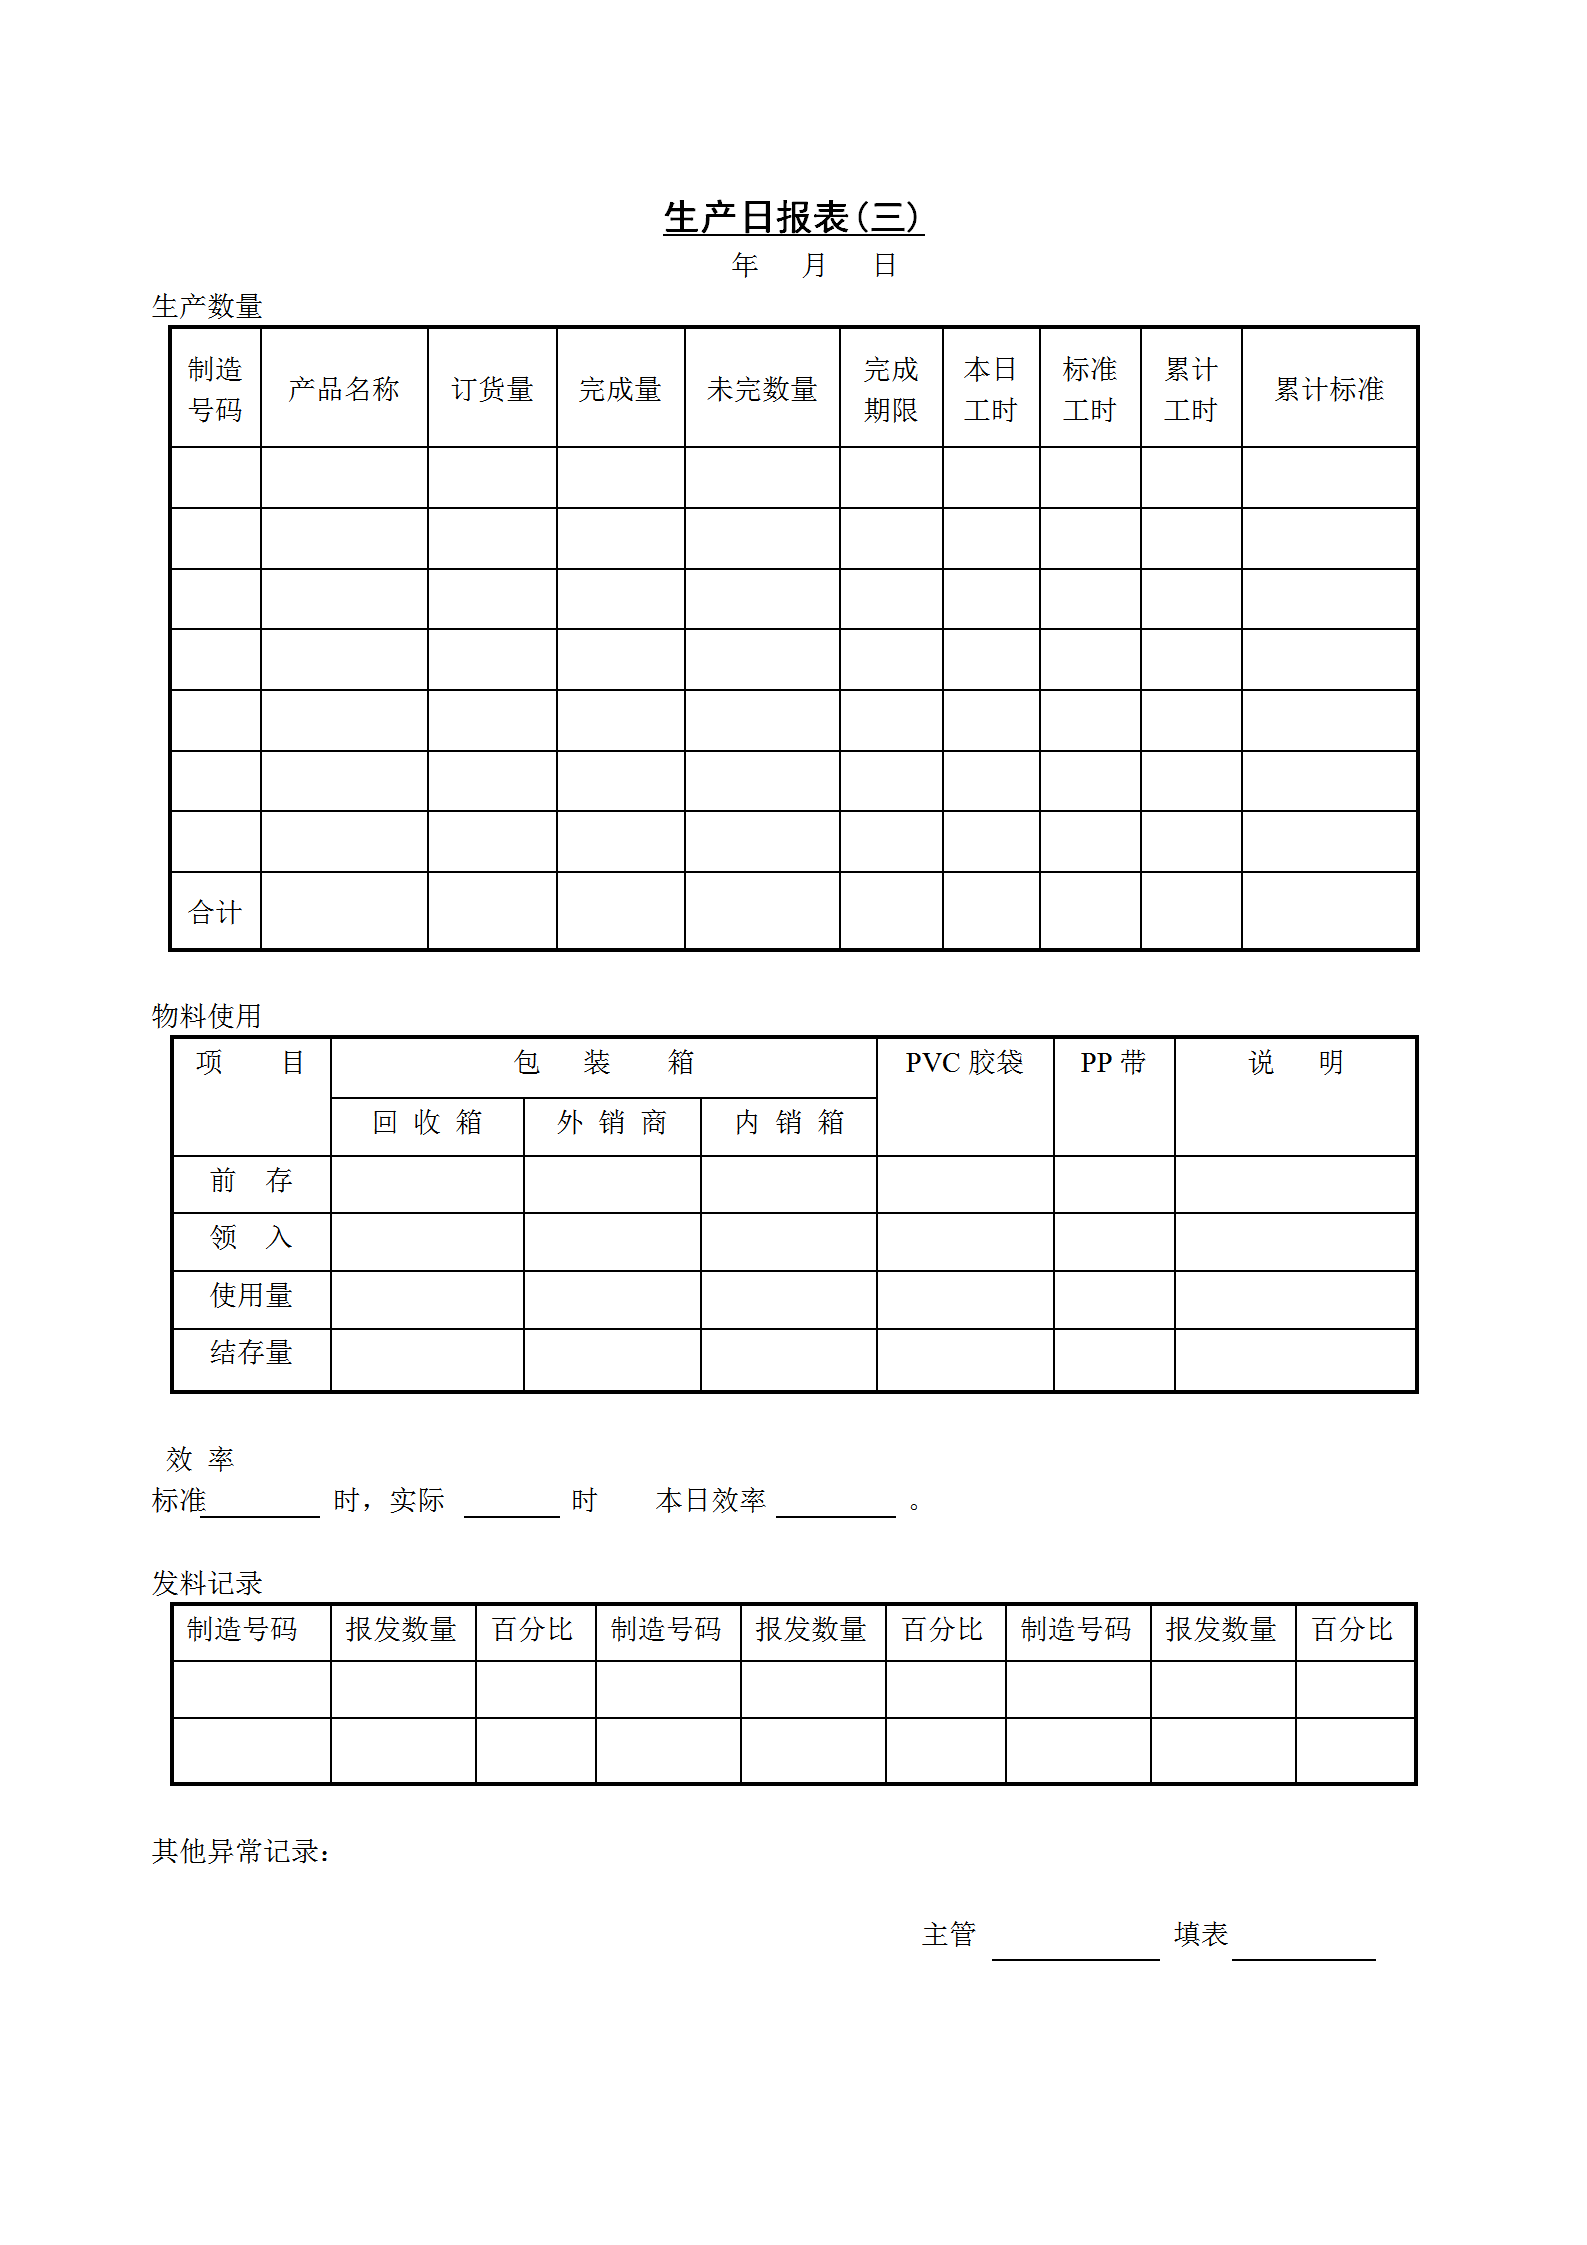 公司生产日统计报表(三)word模板